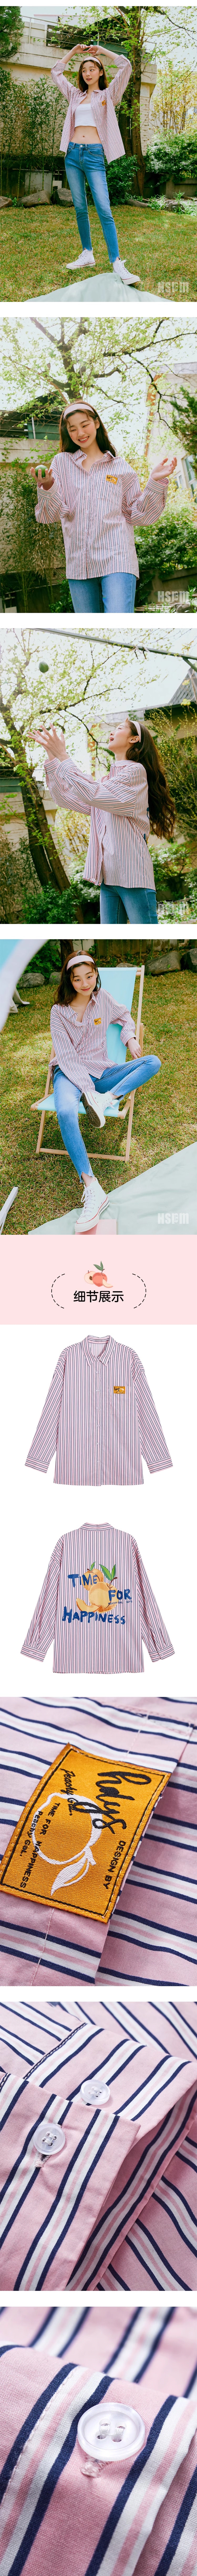 【中国直邮】HSPM新款宽松条纹长袖衬衫 粉色(彩条) S